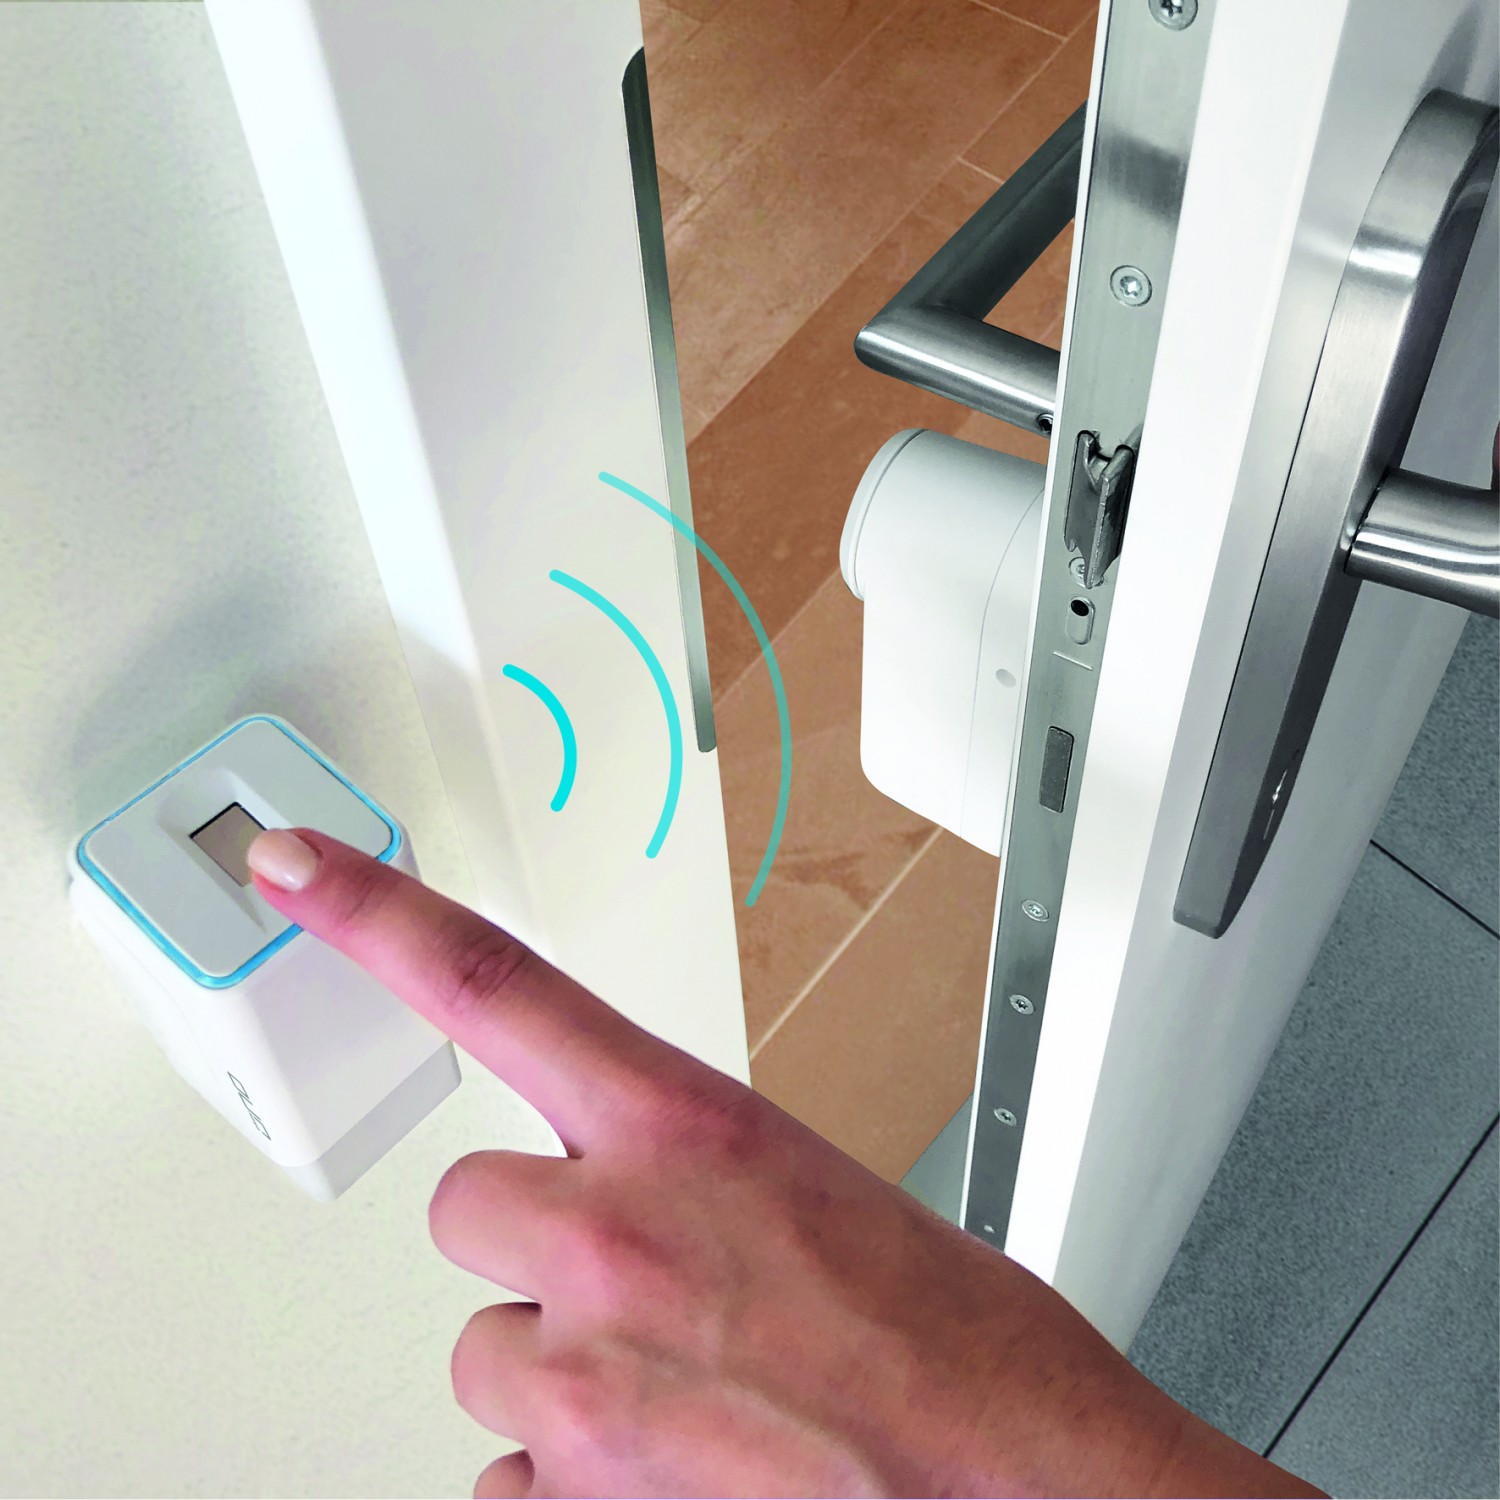 Produktvorstellung Smart Home ohne Wohnungsschlüssel: Fingerprint-Lösung zum Nachrüsten - News, Bild 1